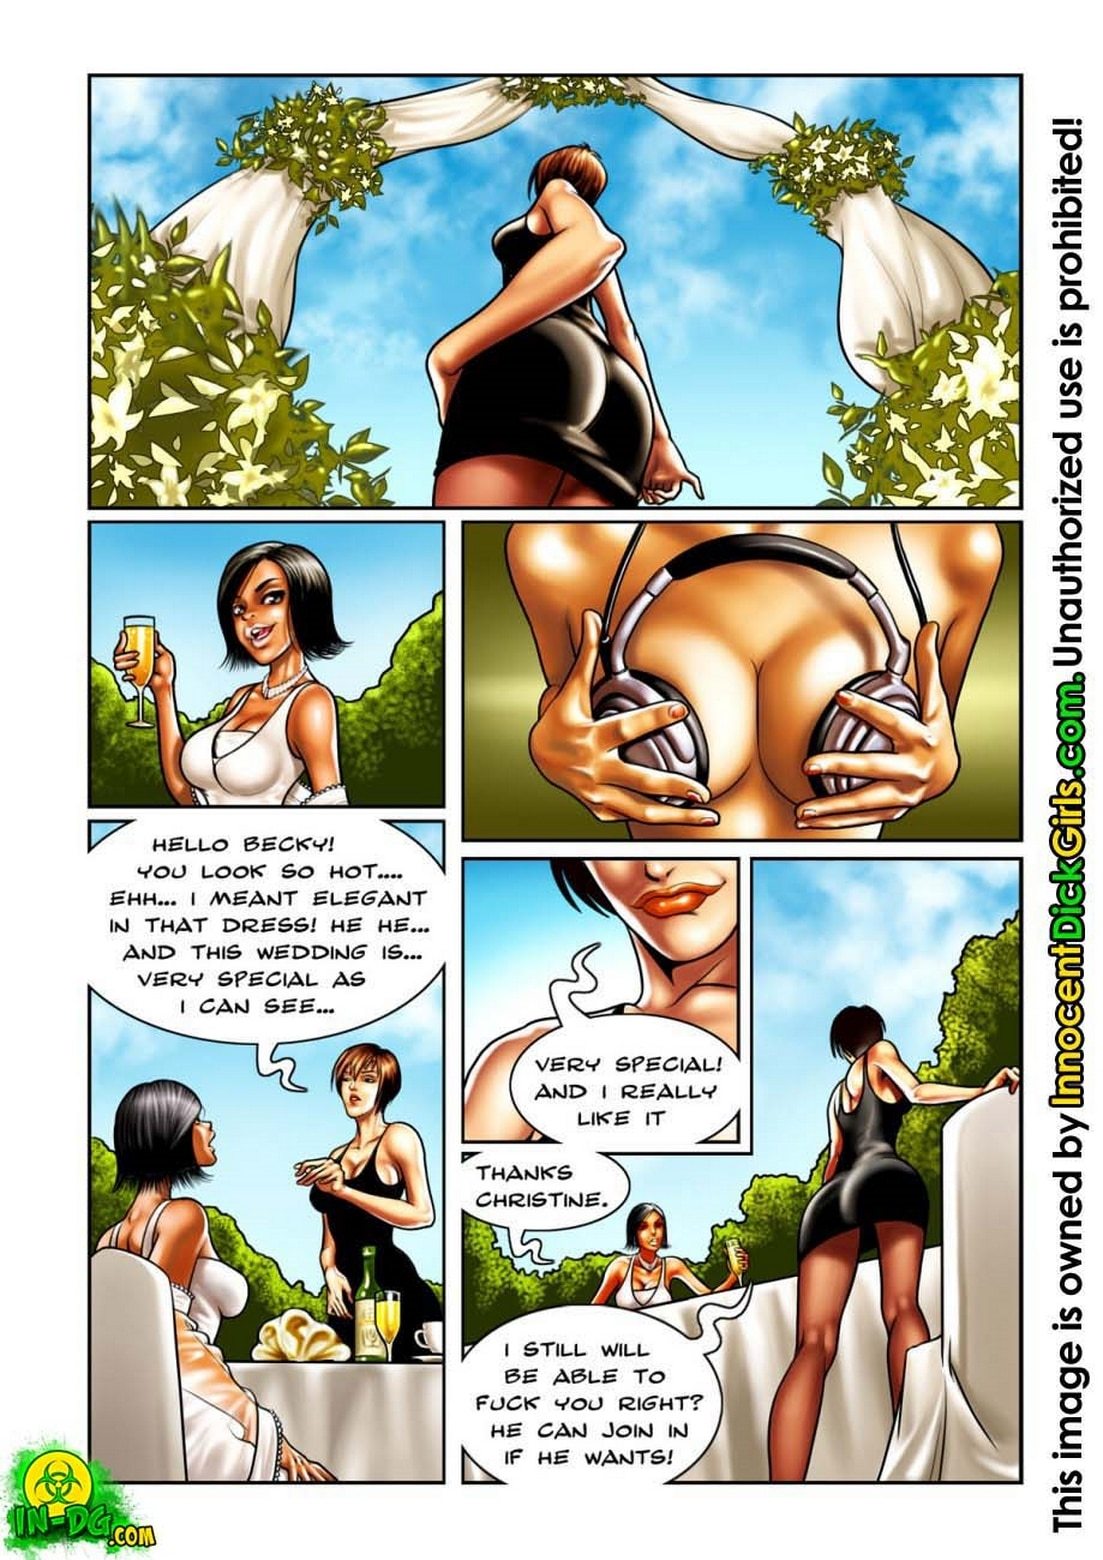 1103px x 1560px - Innocent Dickgirls â€“ The Wedding free Cartoon Porn Comic - HD Porn Comics